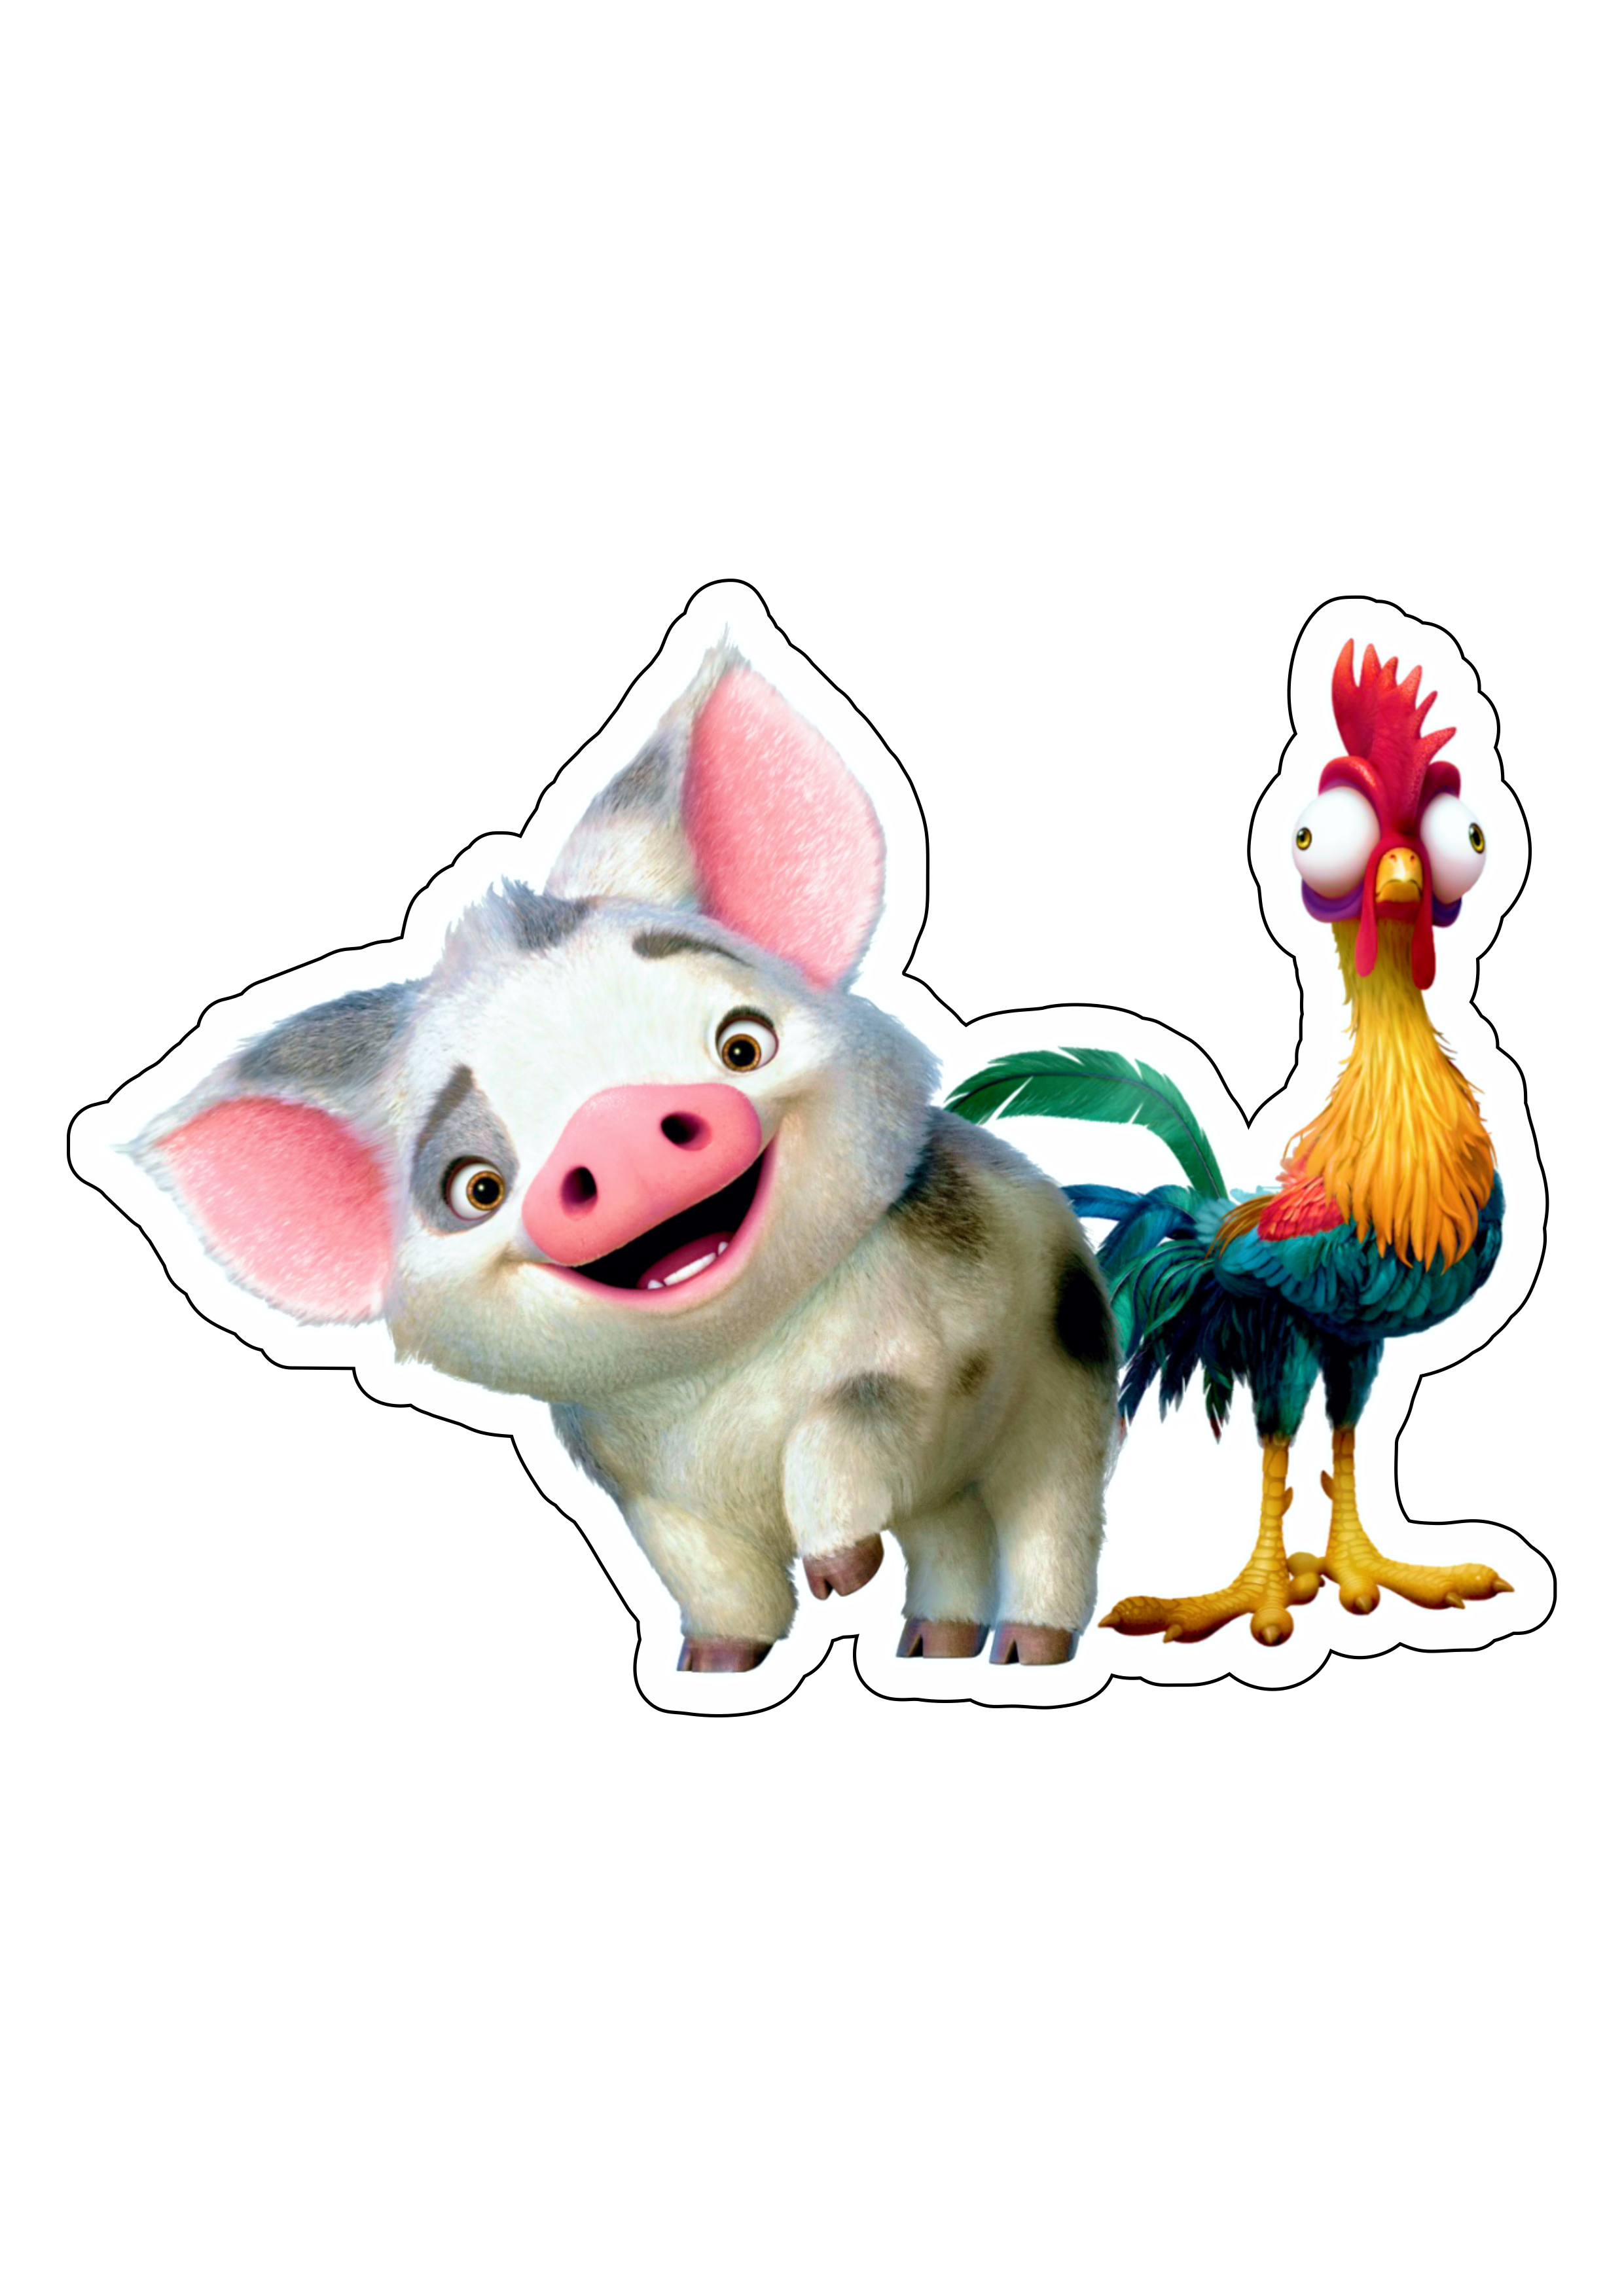 Moana porquinho e galinho desenho filme infantil animação disney personagem fictício tropical png